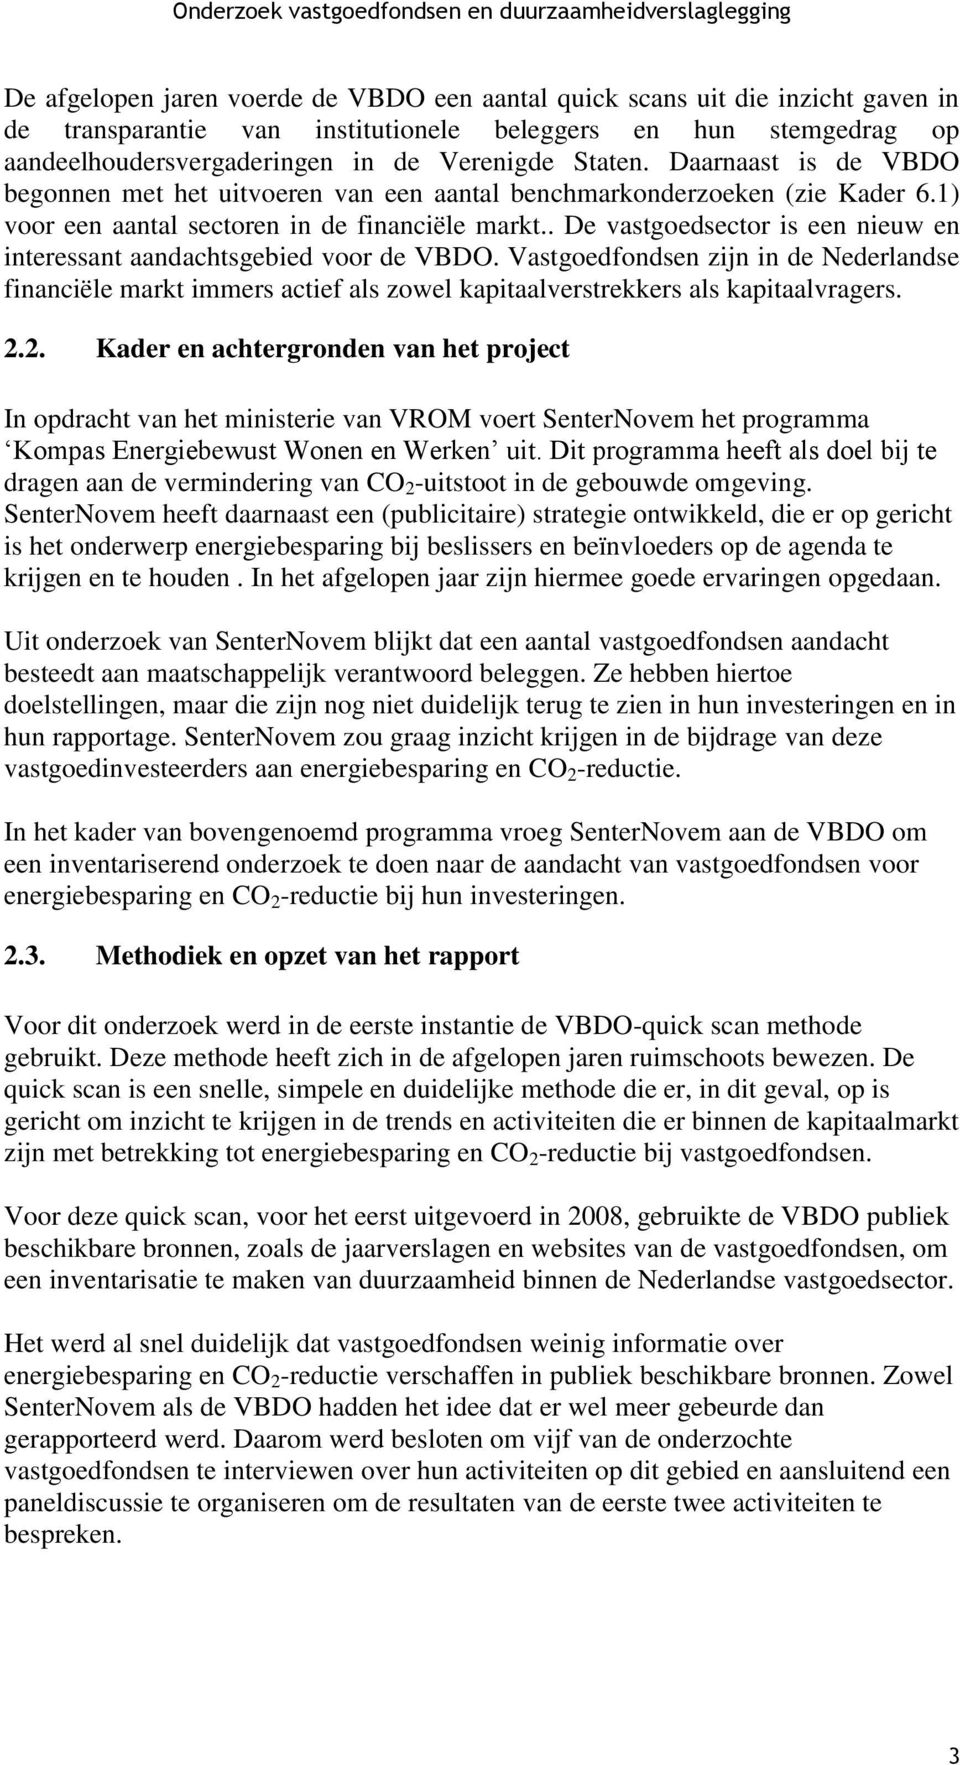 . De vastgoedsector is een nieuw en interessant aandachtsgebied voor de VBDO. Vastgoedfondsen zijn in de Nederlandse financiële markt immers actief als zowel kapitaalverstrekkers als kapitaalvragers.